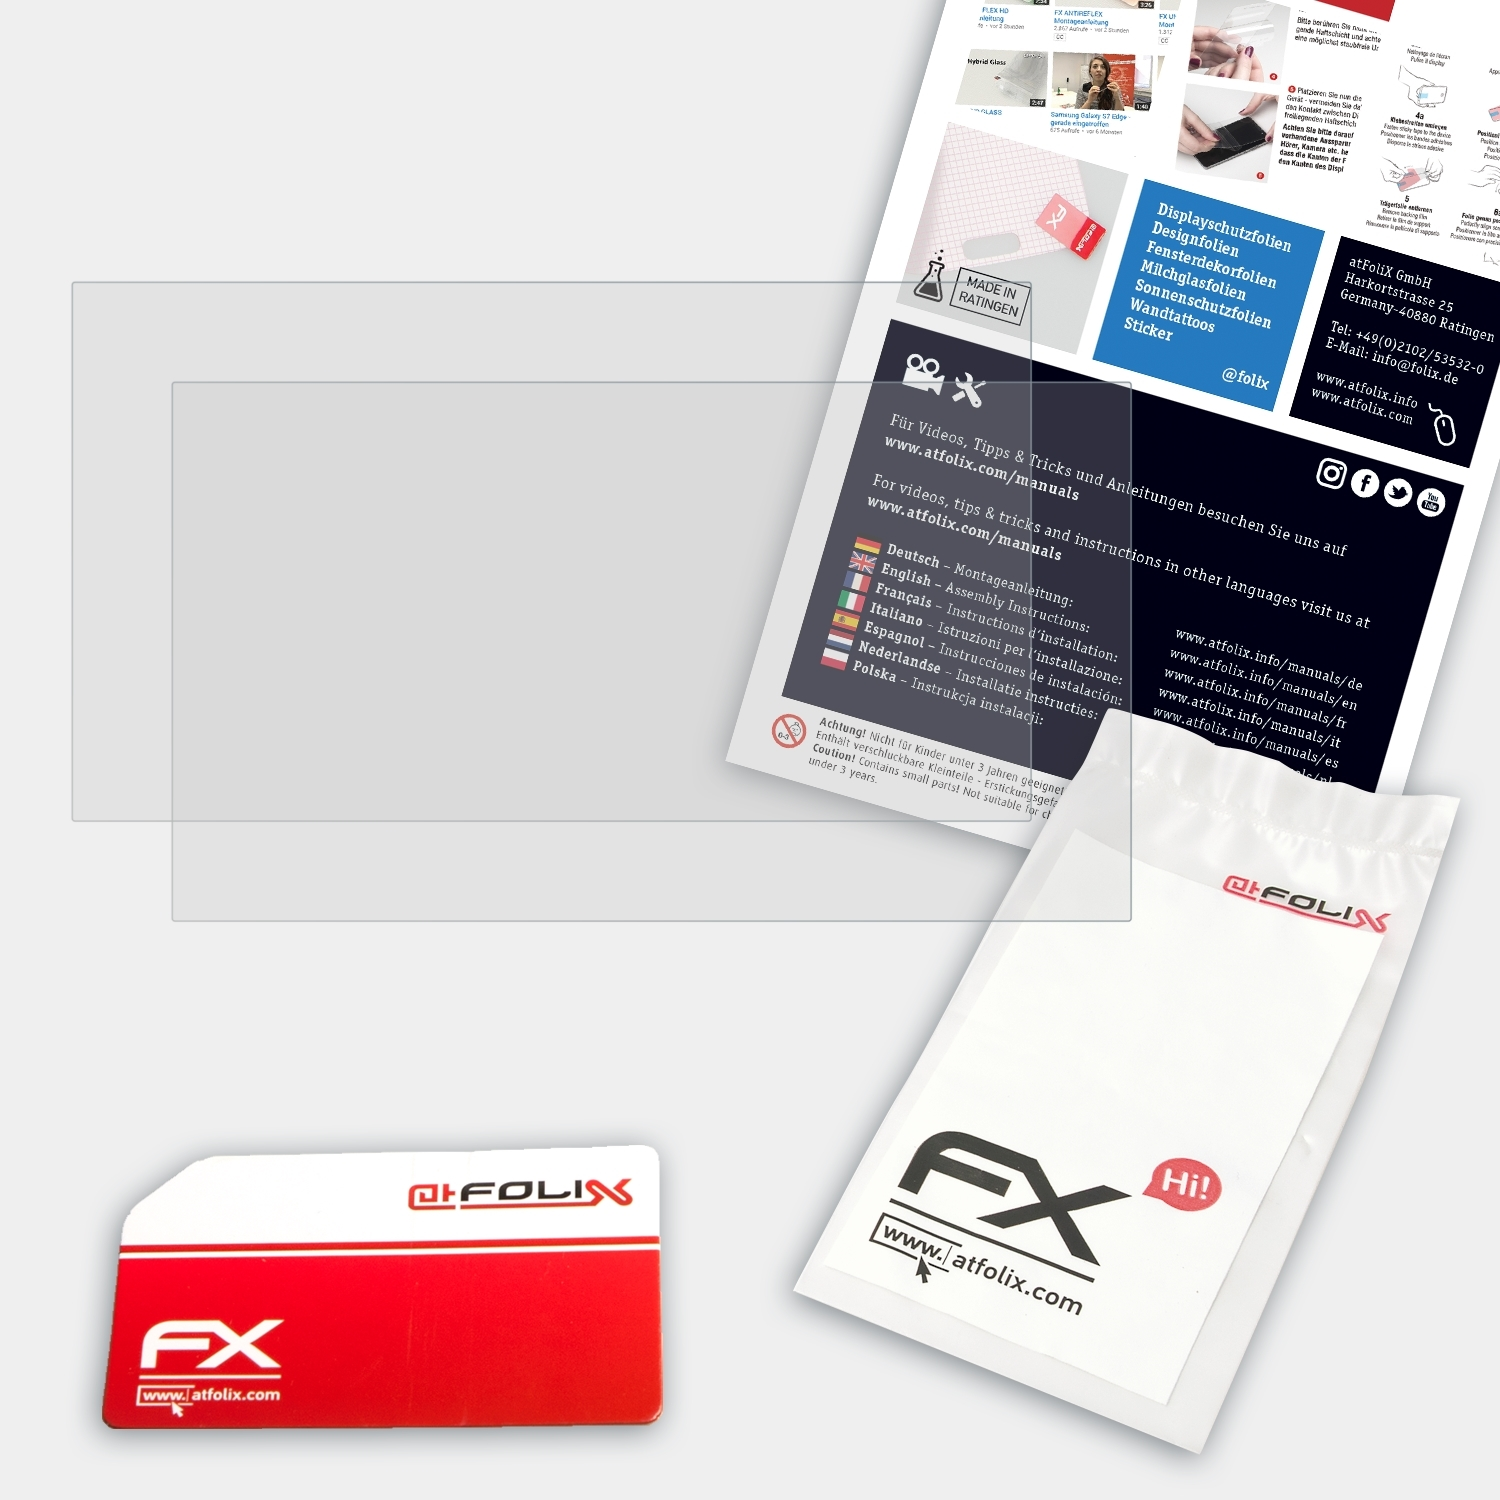 ATFOLIX 2x FX-Antireflex AeroBook Displayschutz(für Chuwi Inch)) Plus (15.6